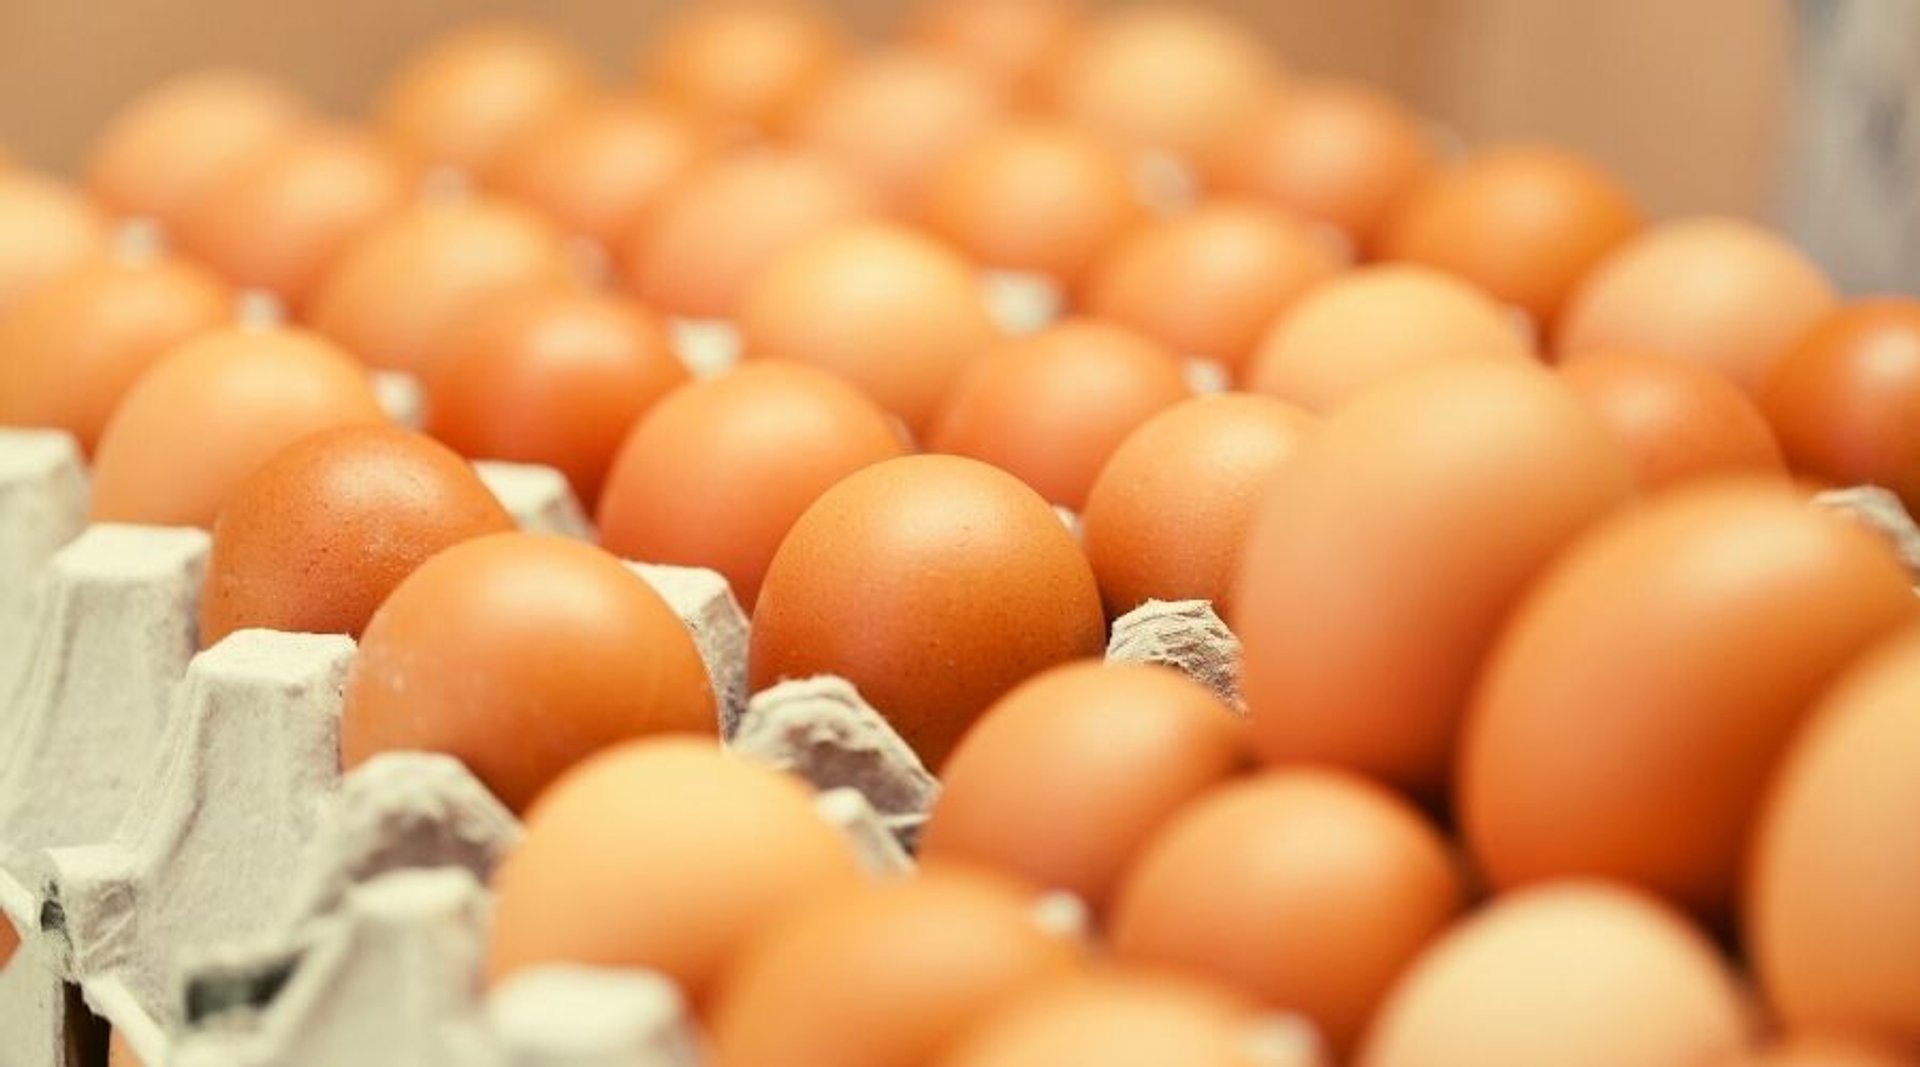 Co oznaczają numery na jajkach?